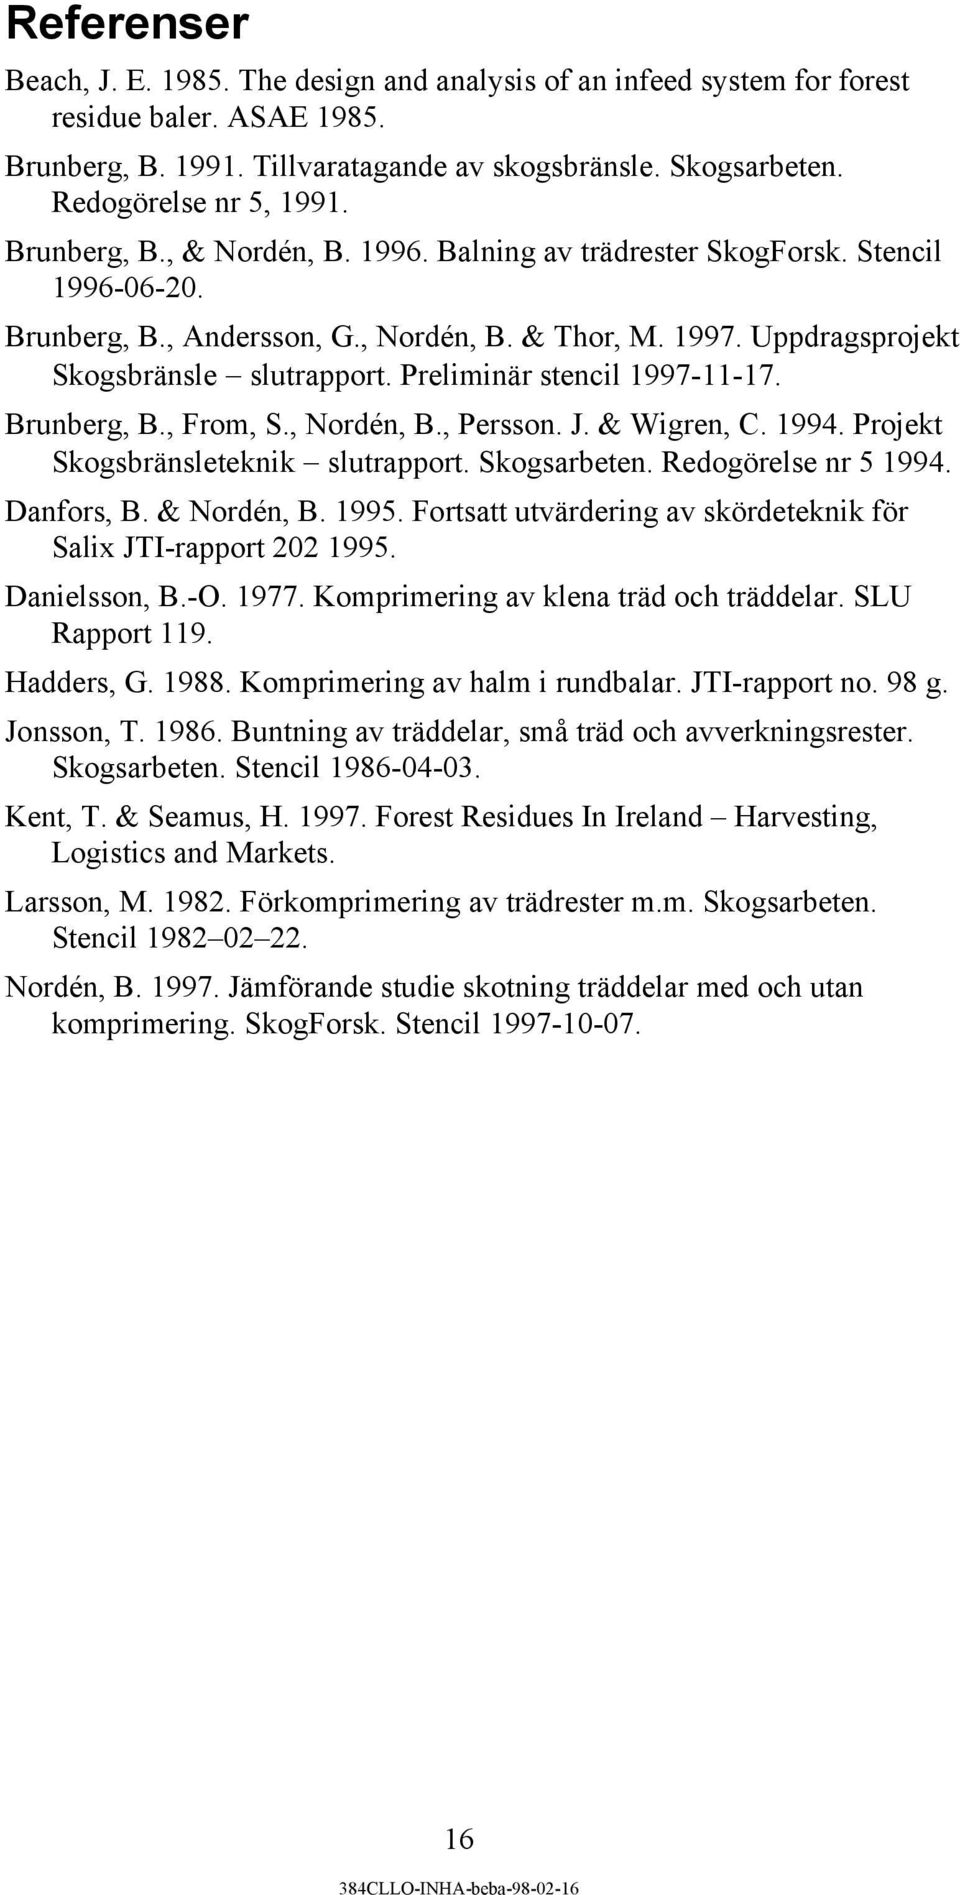 Preliminär stencil 1997-11-17. Brunberg, B., From, S., Nordén, B., Persson. J. & Wigren, C. 1994. Projekt Skogsbränsleteknik slutrapport. Skogsarbeten. Redogörelse nr 5 1994. Danfors, B. & Nordén, B.